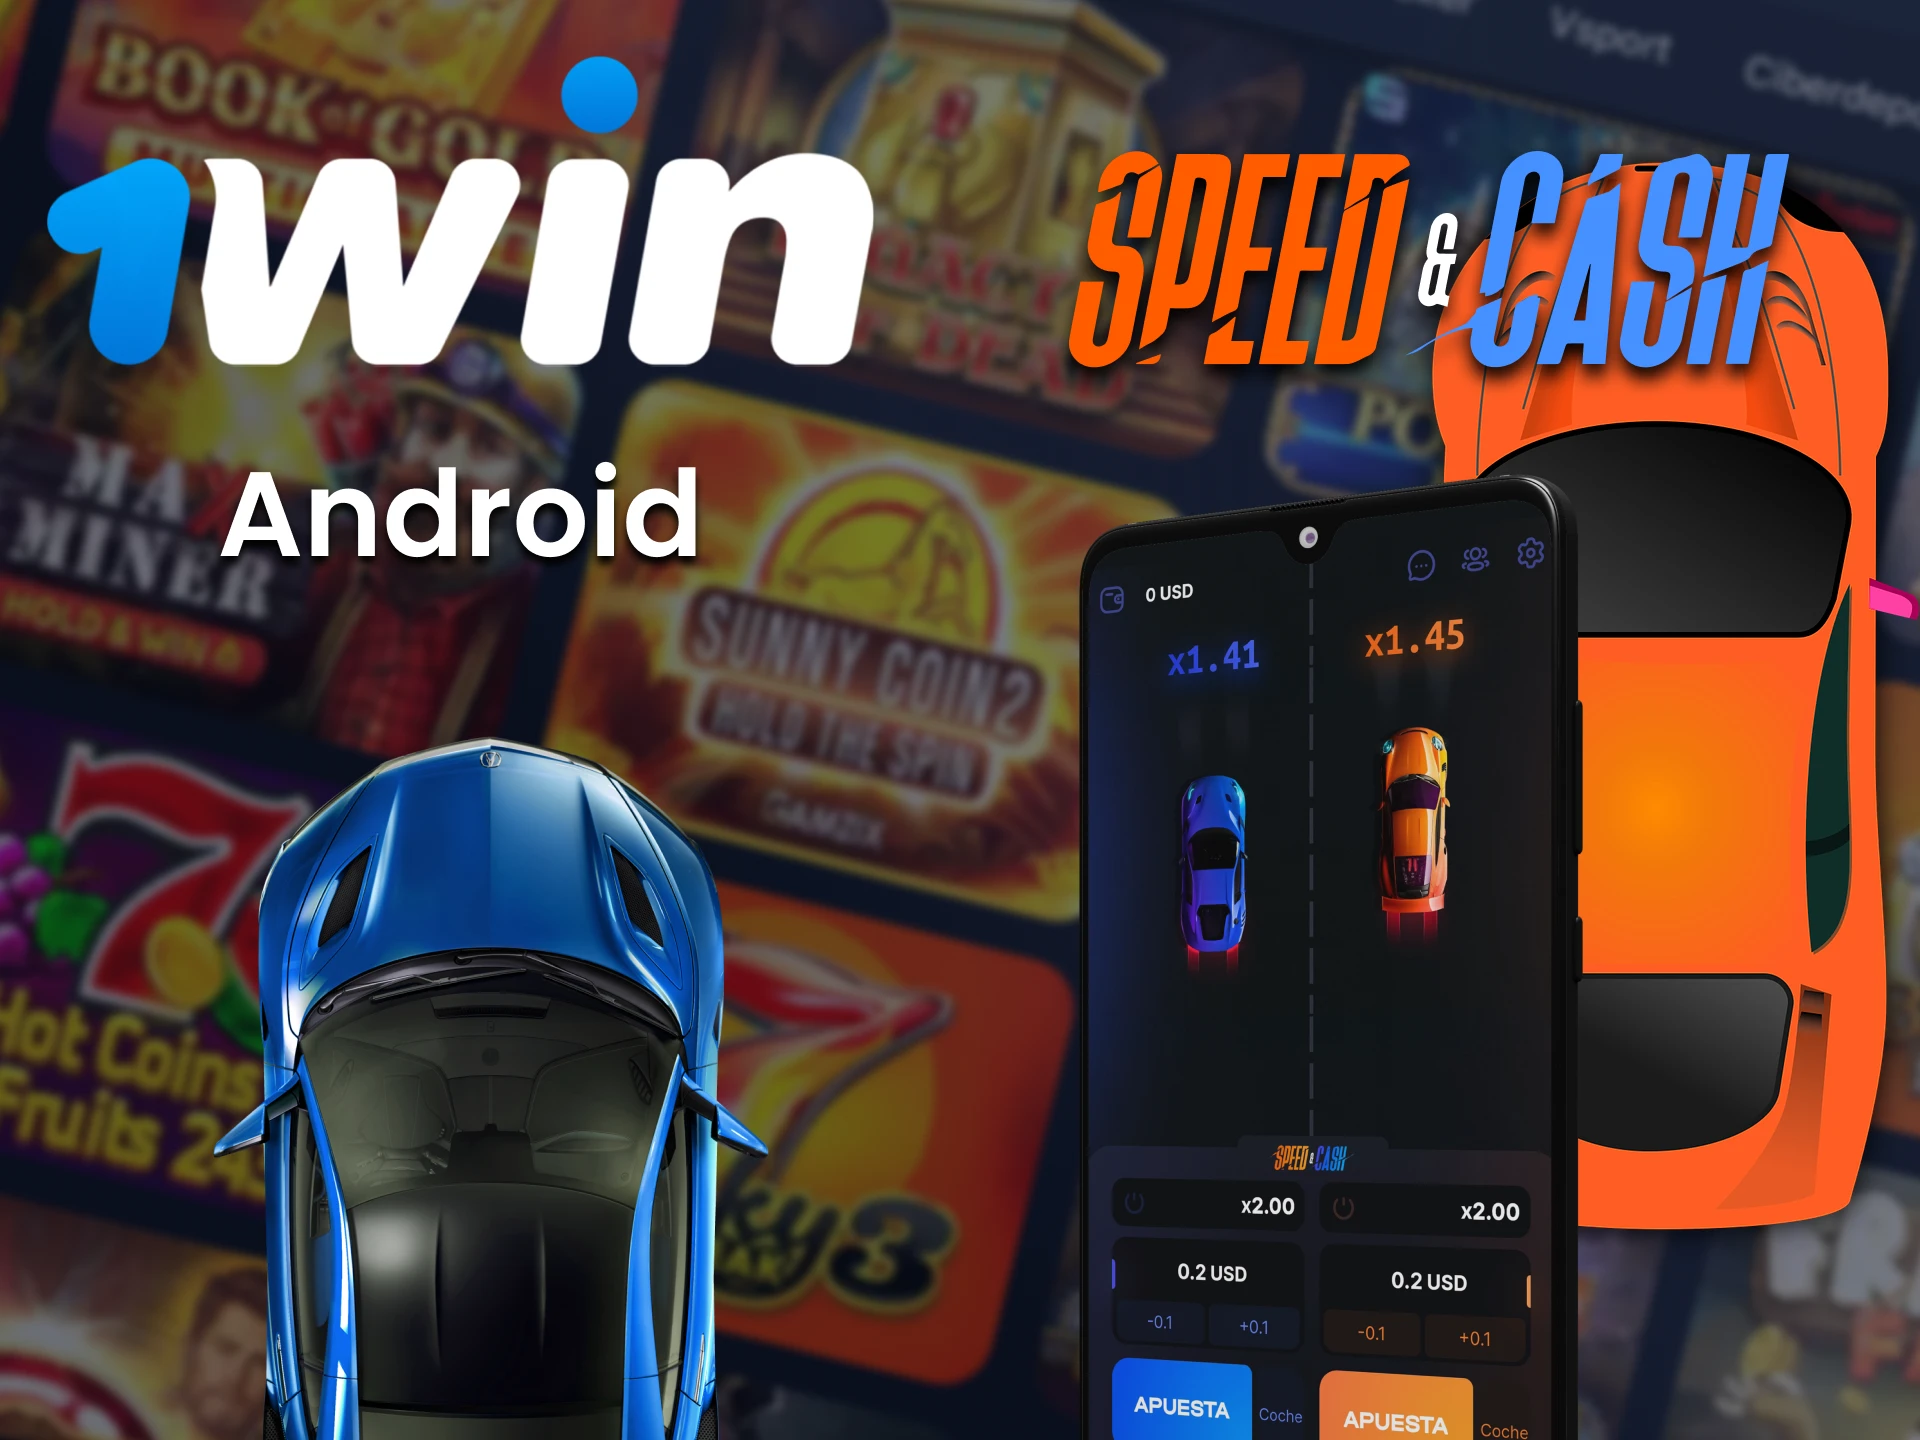 Juega Speed ​​​​and Cash con la aplicación 1win para Android.